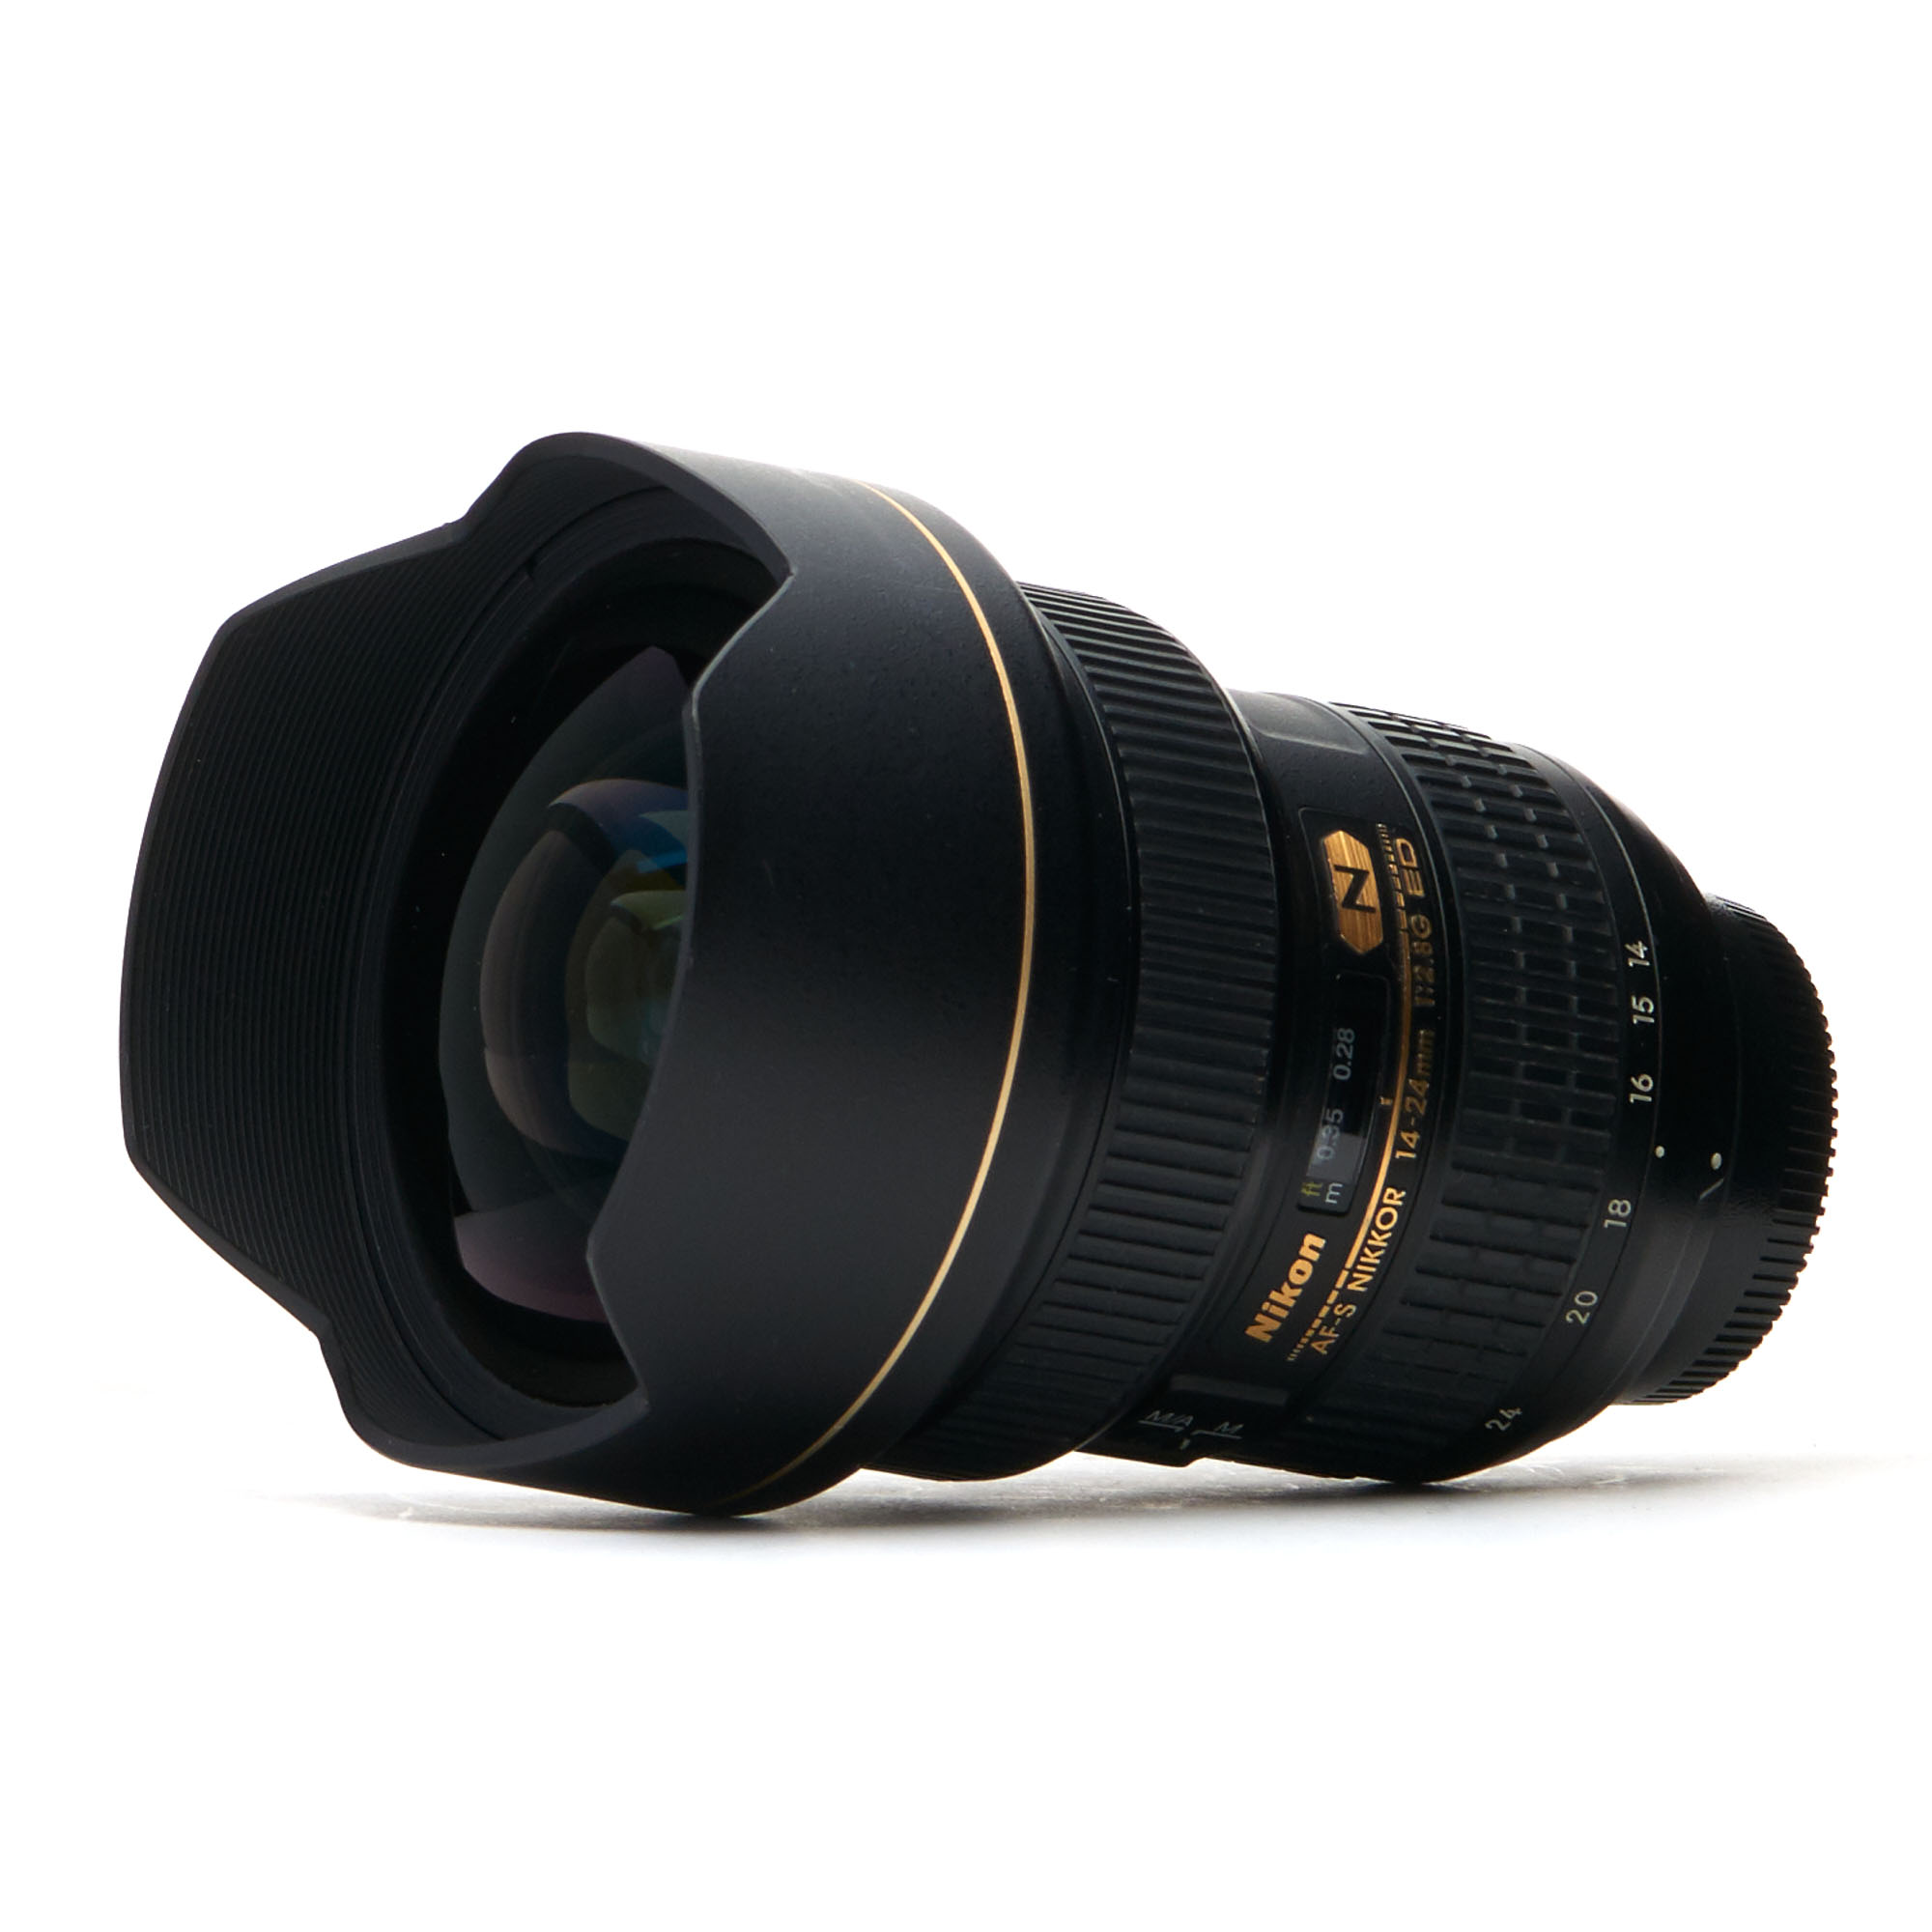 Nikon AF-S NIKKOR 14-24mm F/2.8G Ultra Wide Angle Lens for 